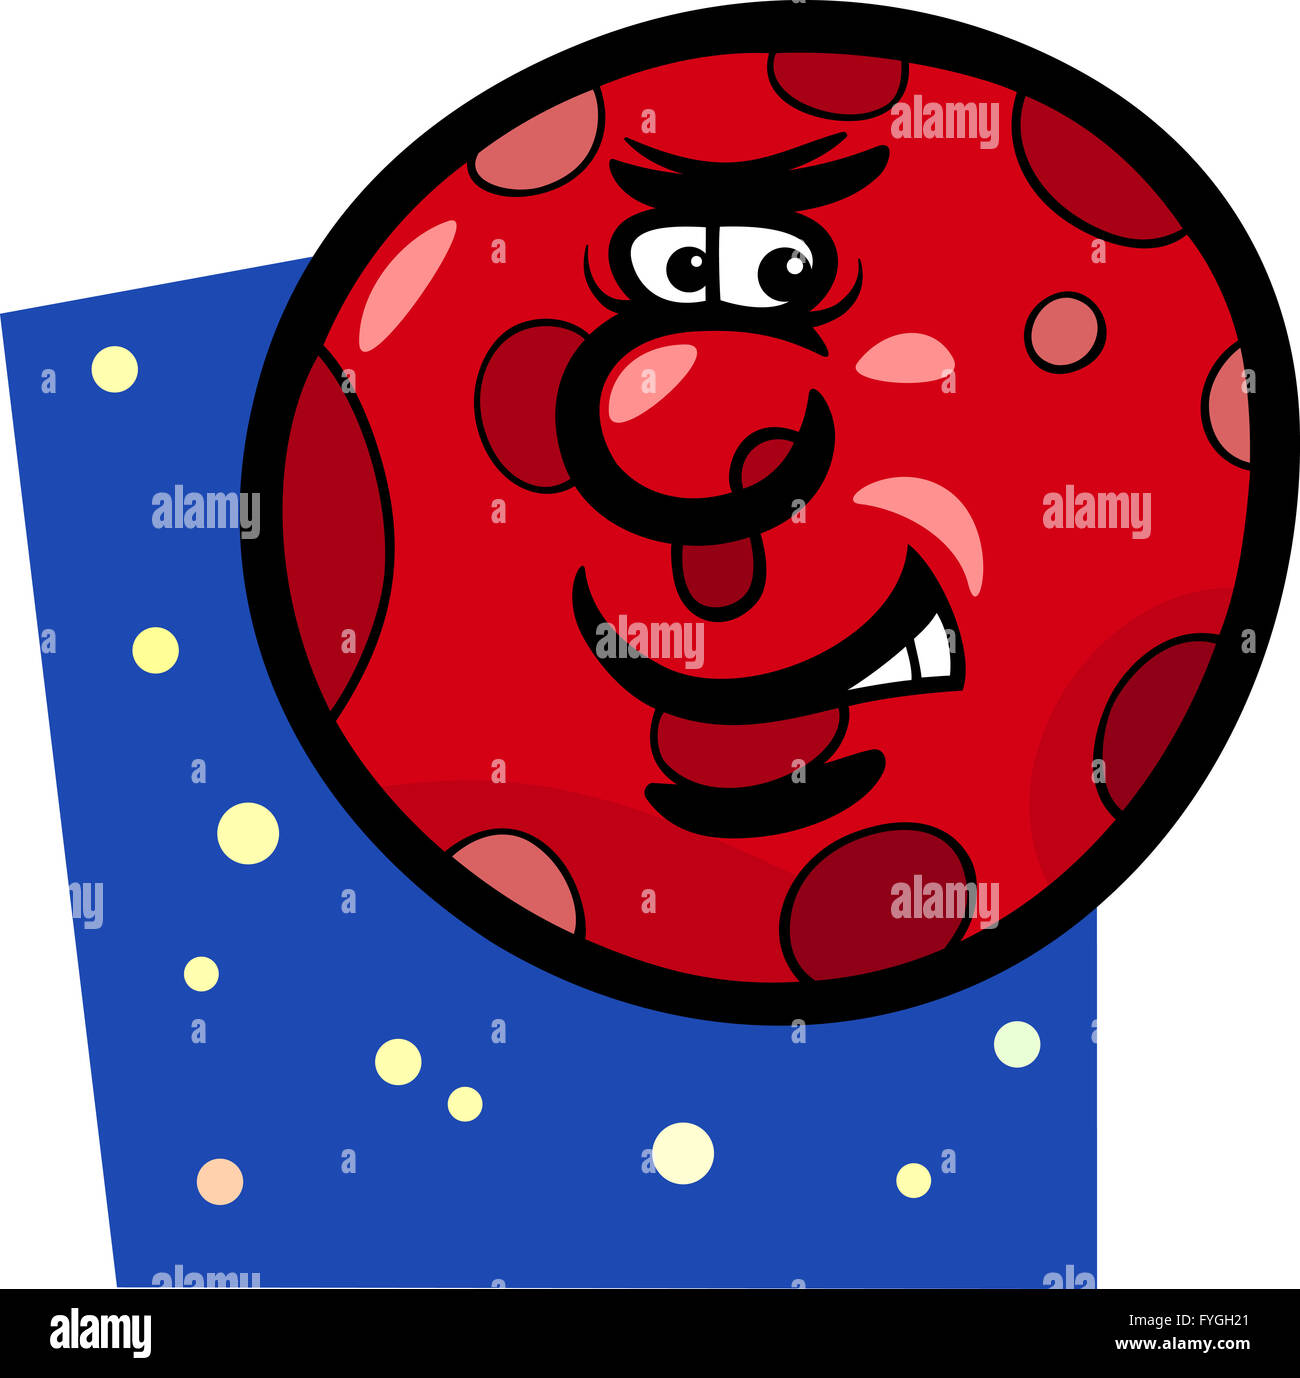 Planeta Marte divertida caricatura ilustración Foto de stock